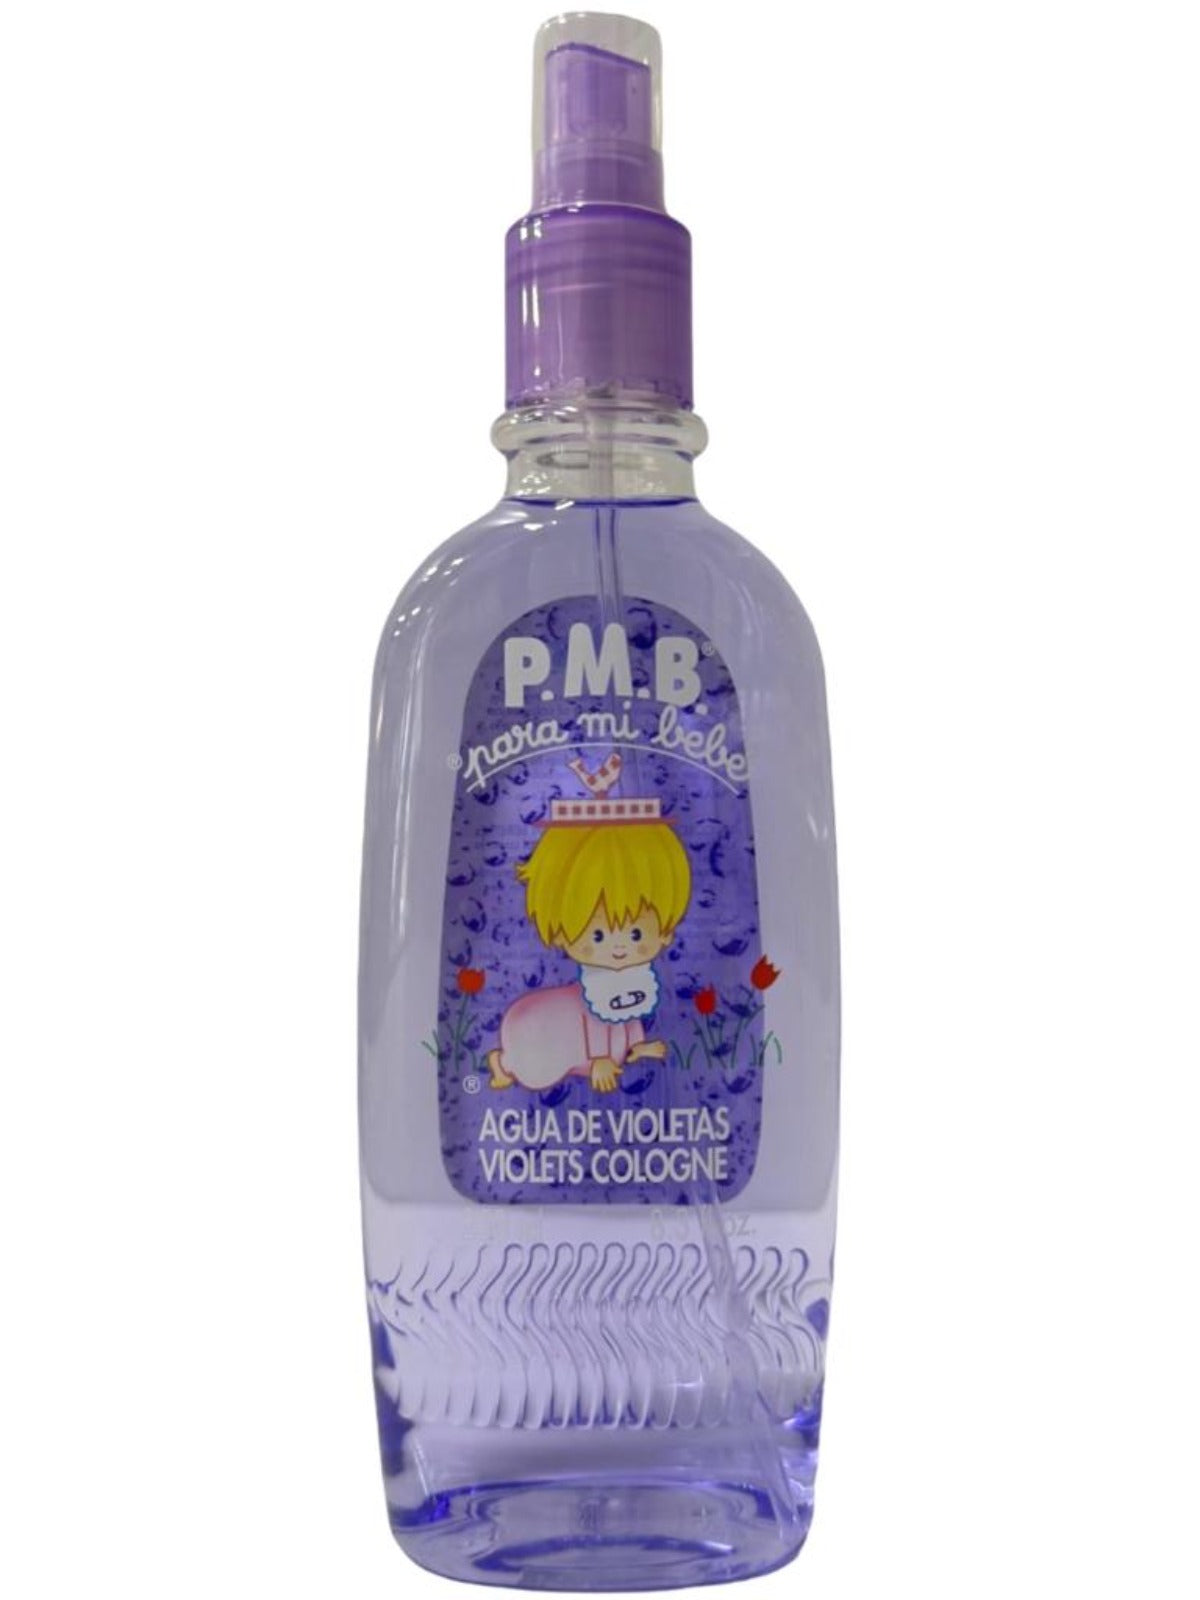 Para Mi Bebe Agua De Violetas Violets Cologne Spray 250ml